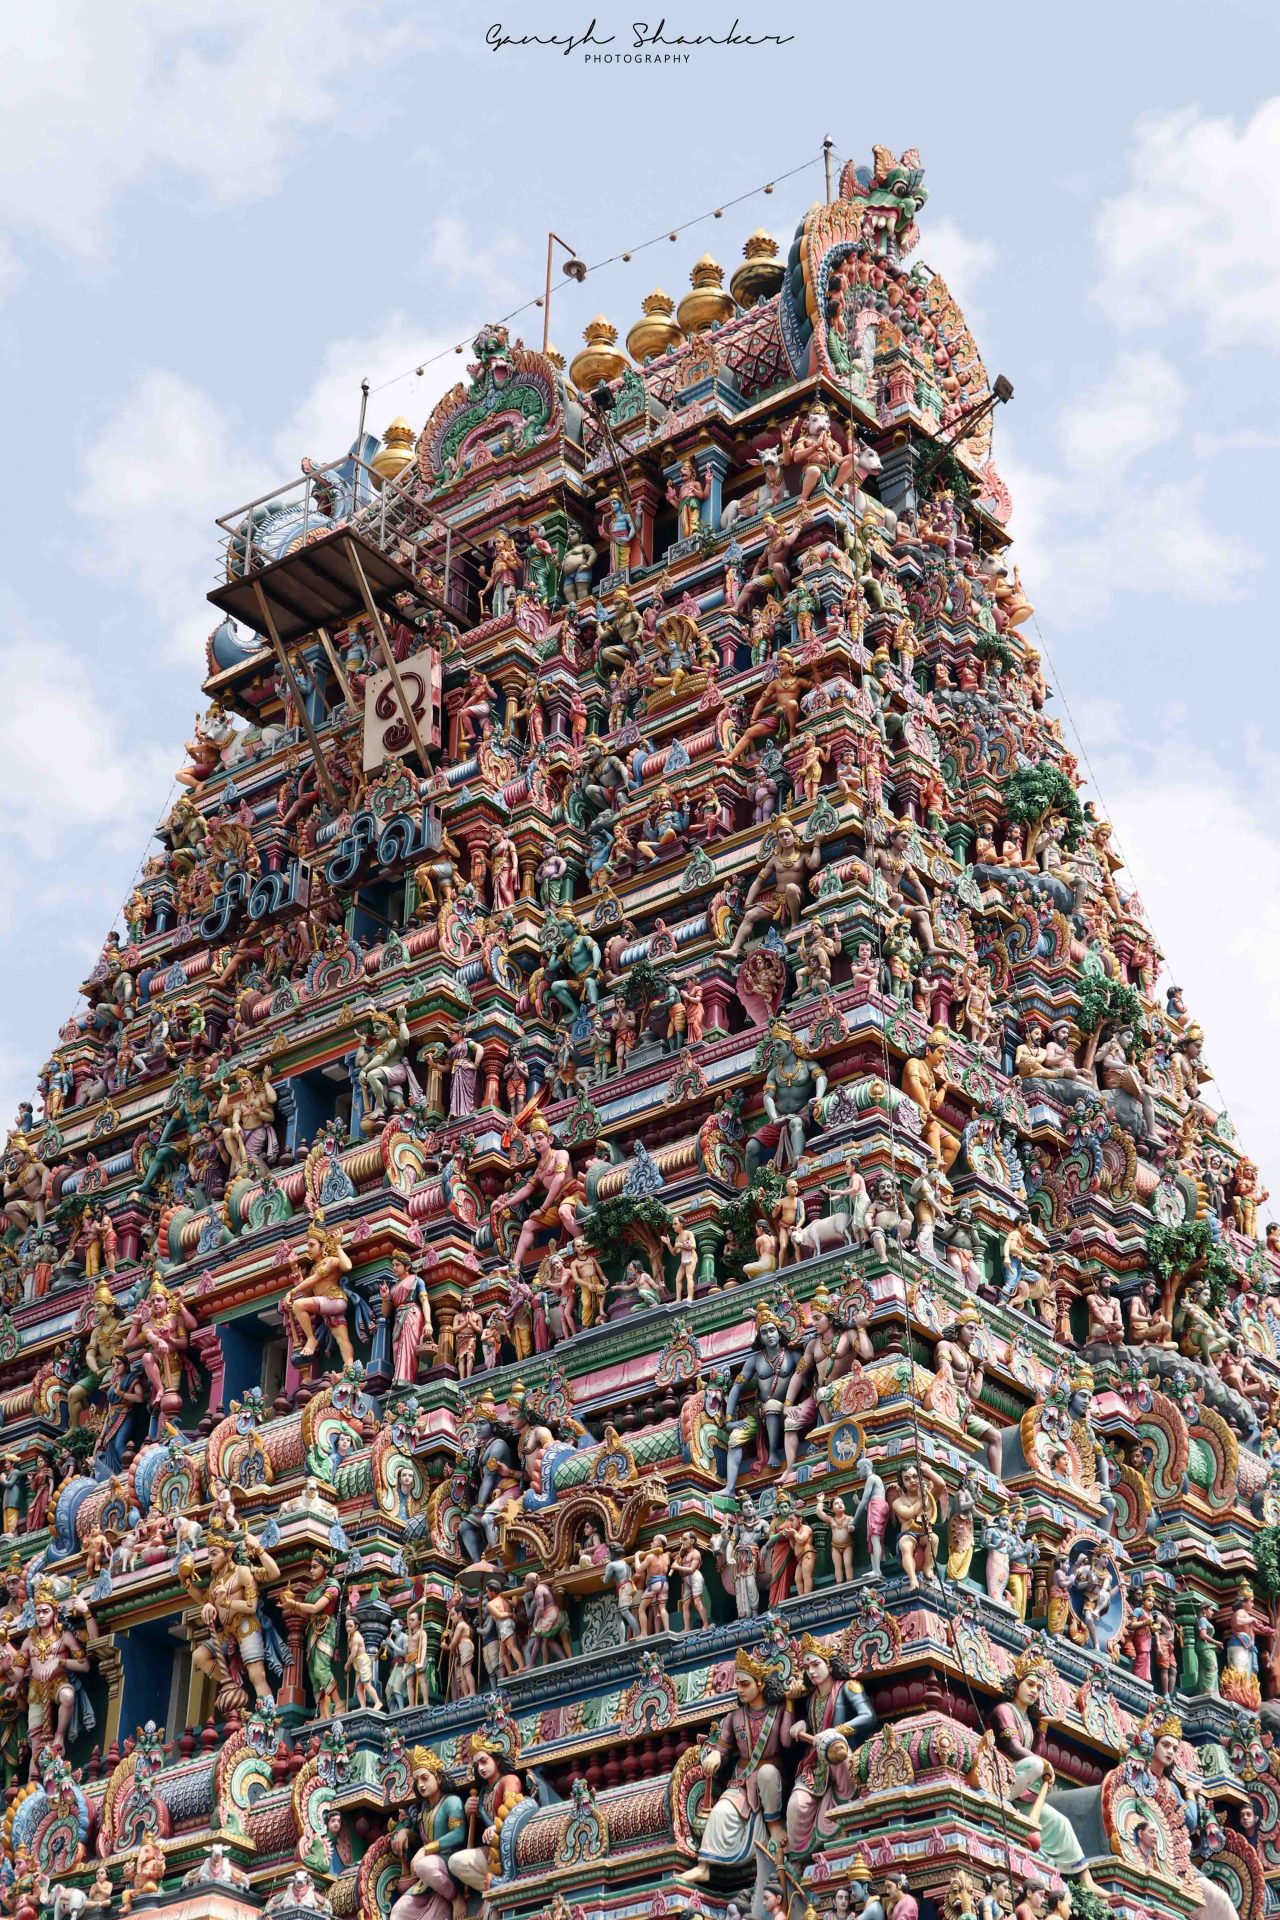 Kapaleeswarar-temple-photo-ganesh-shanker-kk